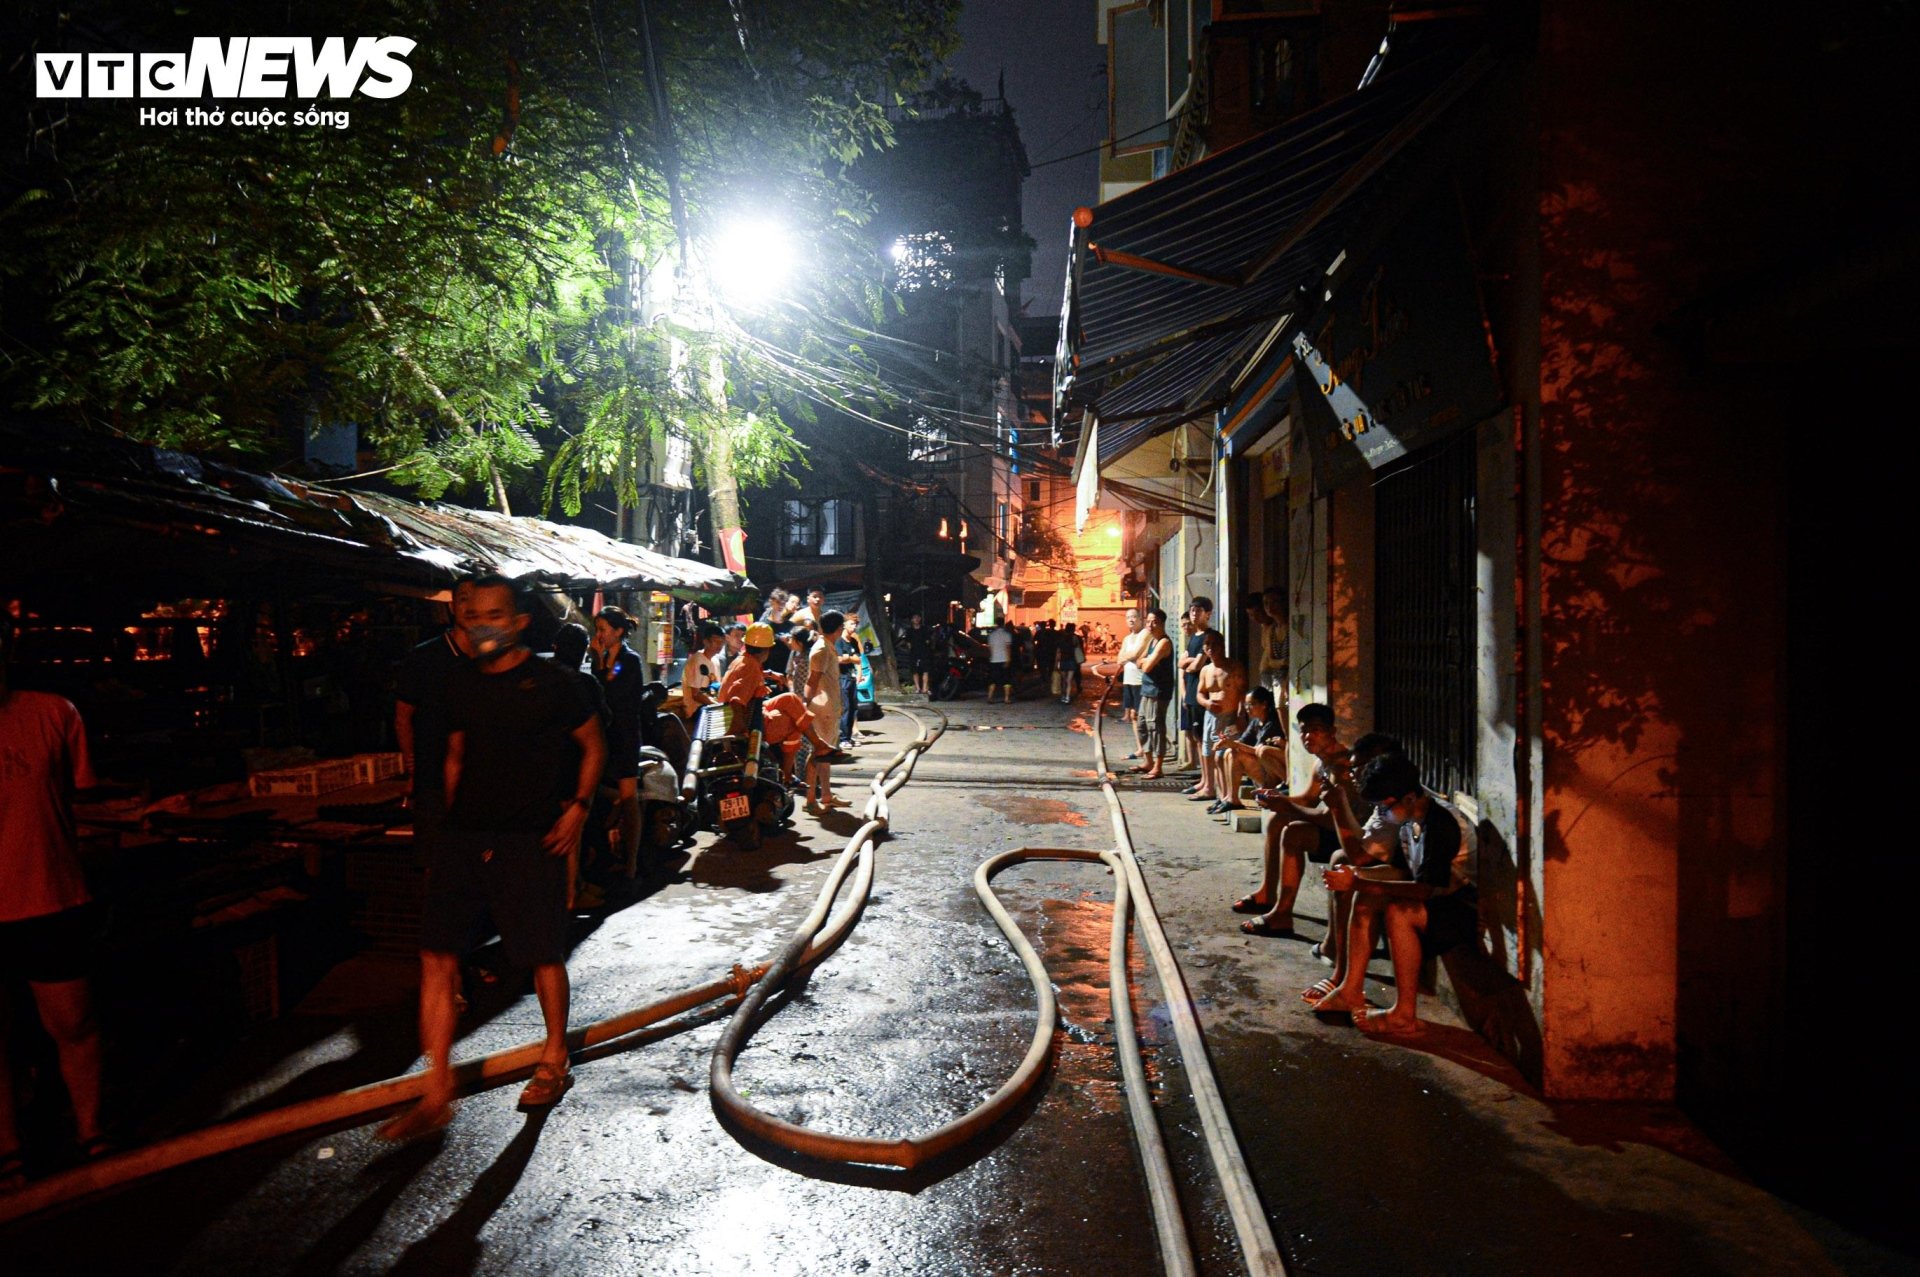 Hiện trường vụ cháy chung cư mini ở Hà Nội trong đêm, nhiều người ngất xỉu - Ảnh 3.